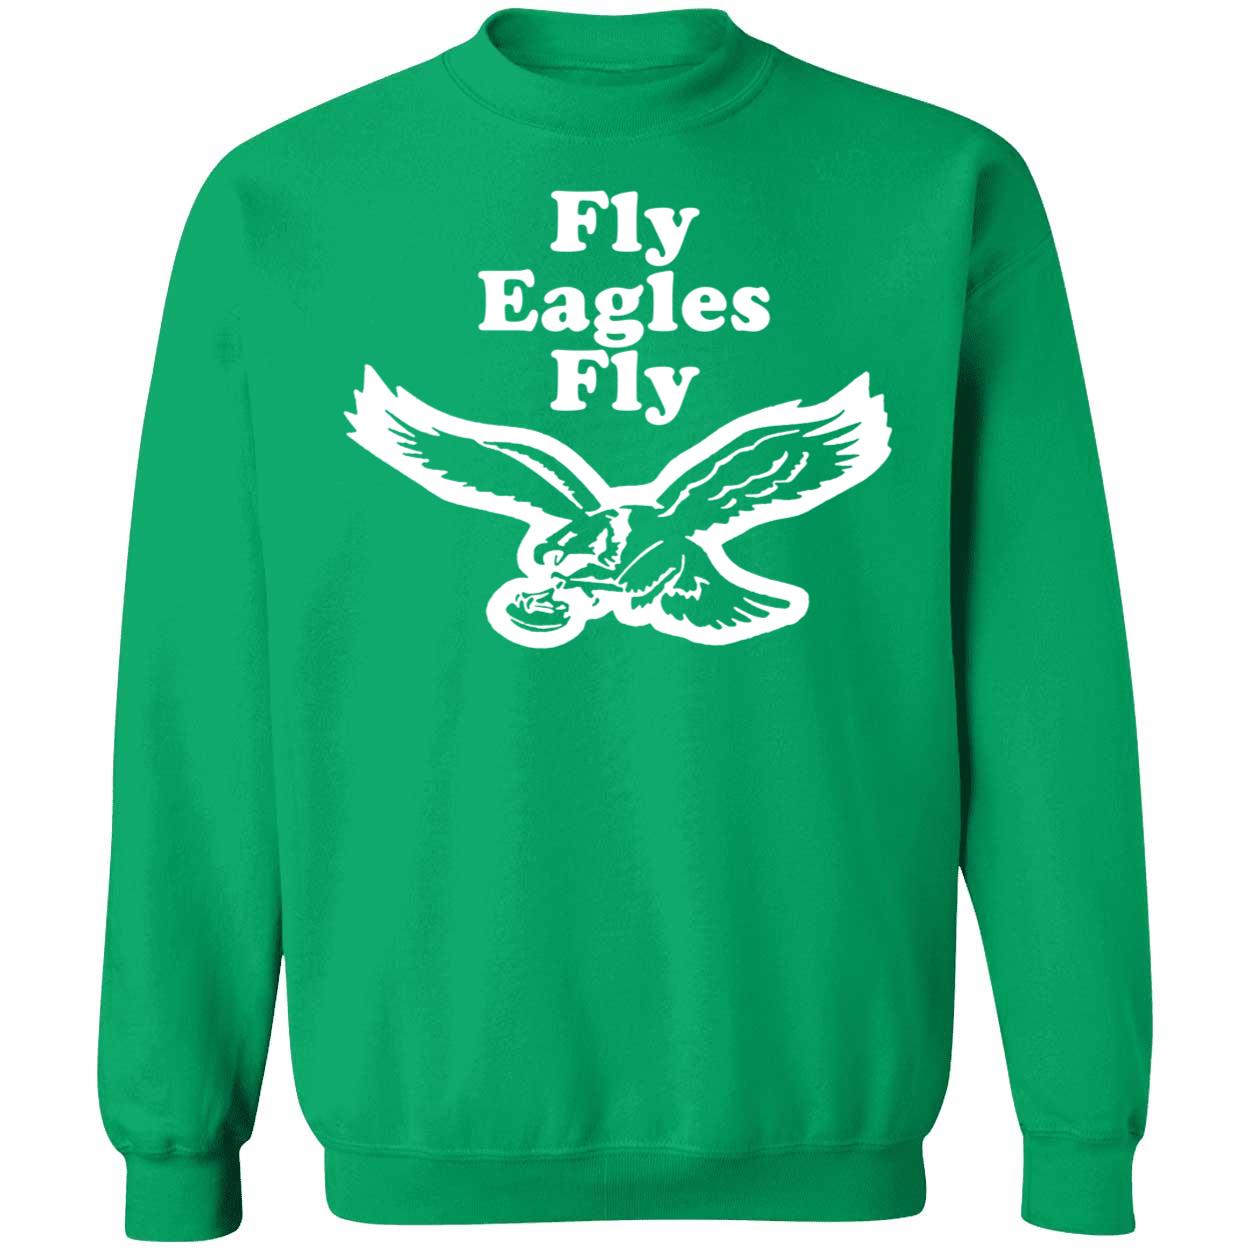 Premium Philadelphia eagles toddler black fly eagles fly shirt